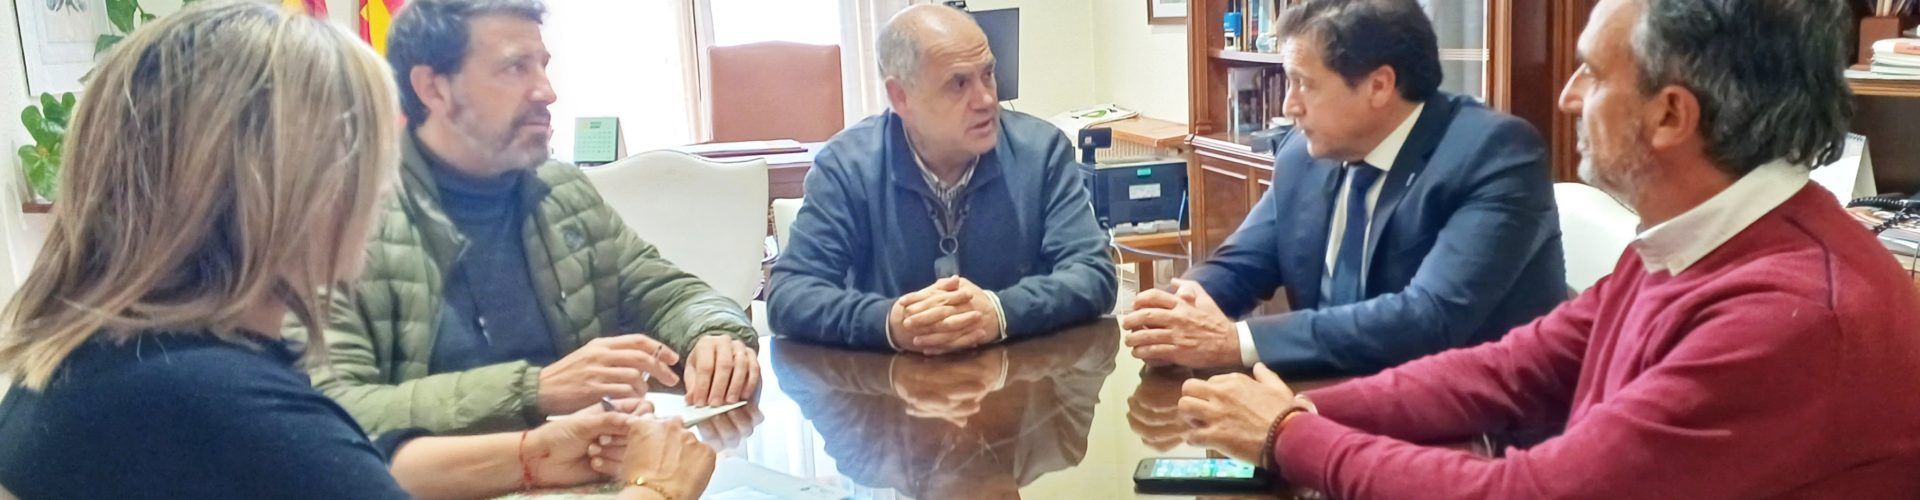 El director general d’Administració Local visita l’Ajuntament de Benicarló